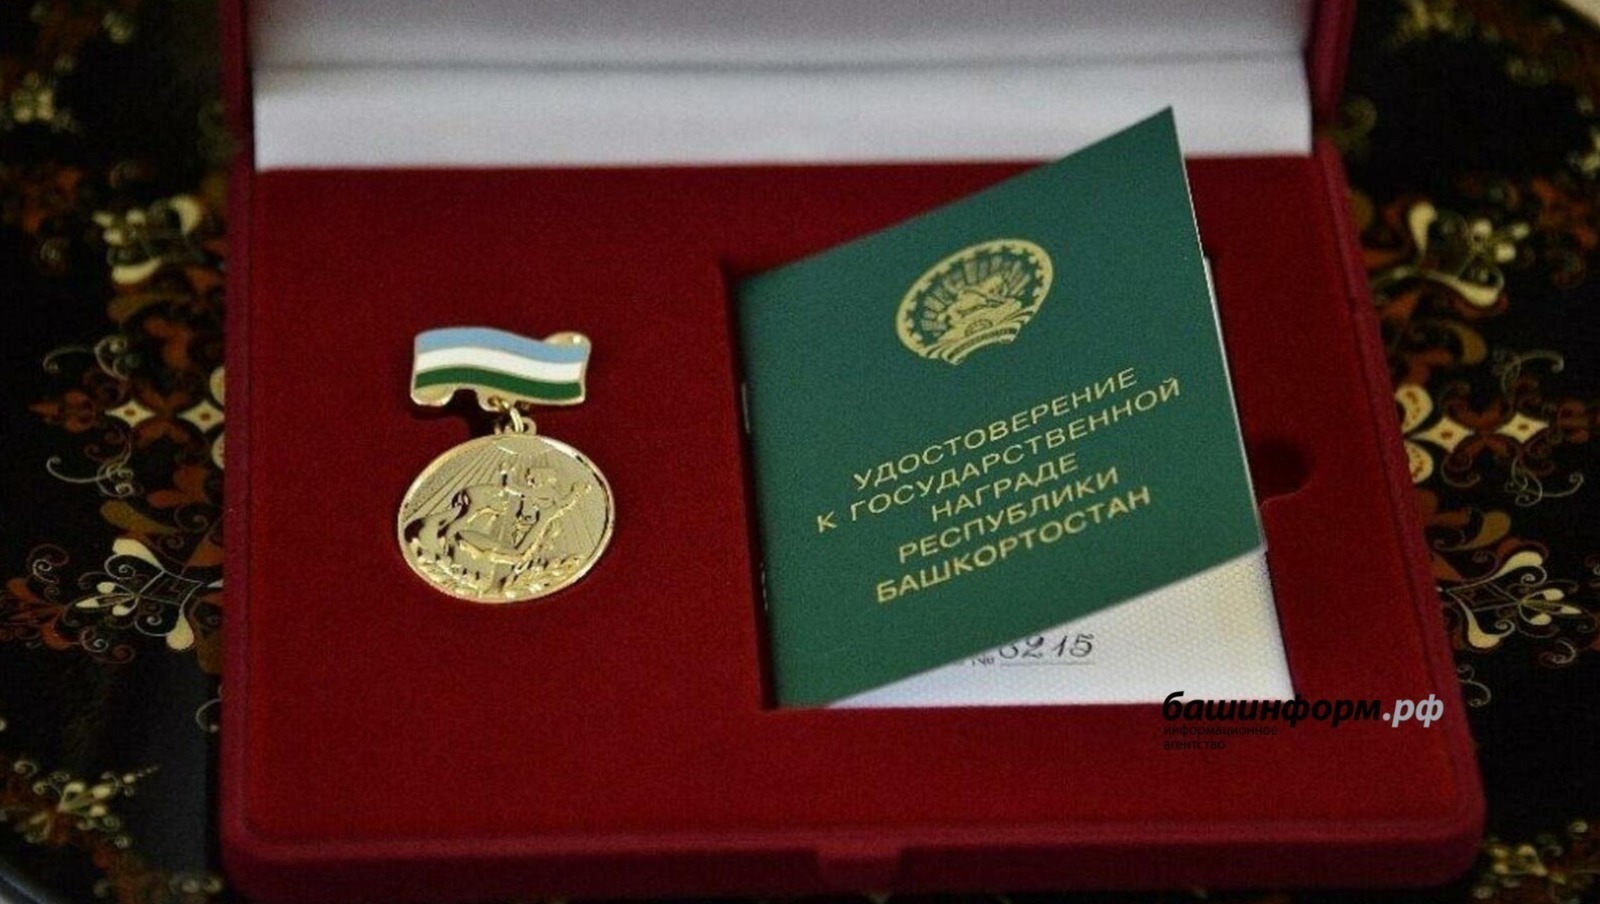 Глава Башкирии подписал указ о награждении медалями "Материнская слава"